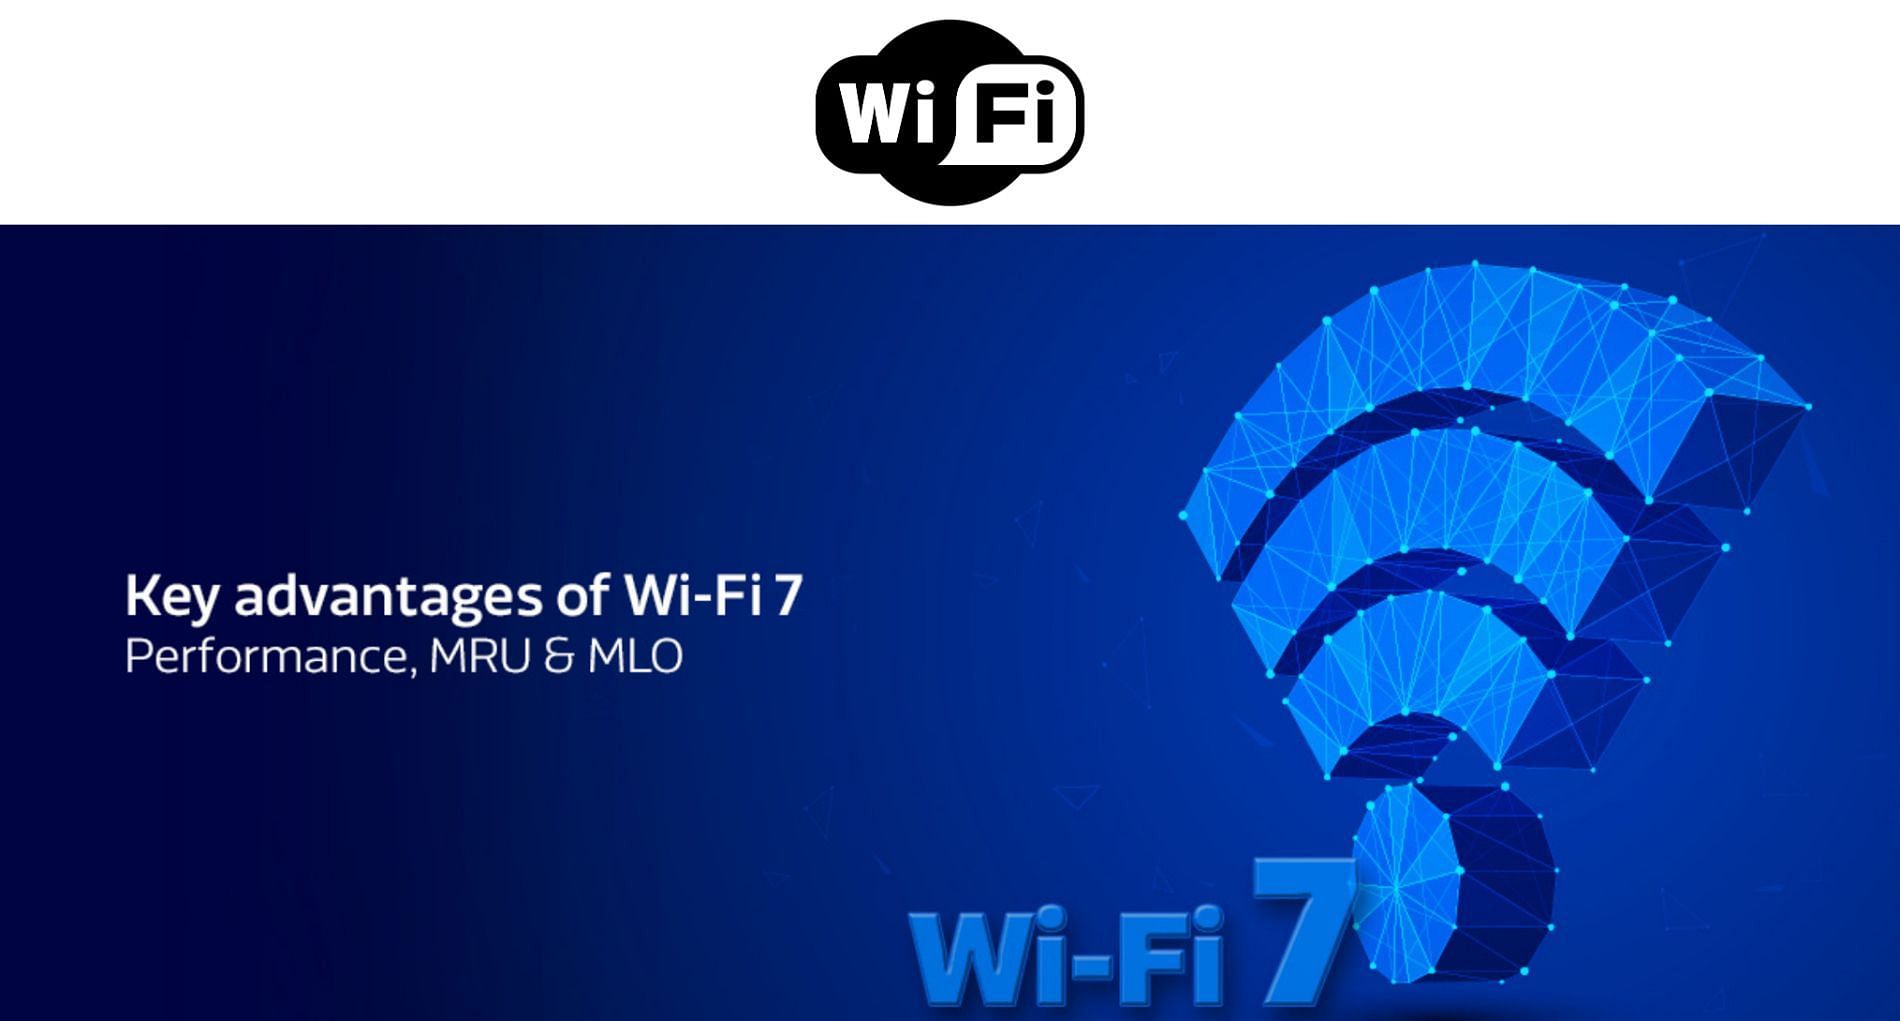 Wifi 7 is promising (image by Huawei and Mediatek)